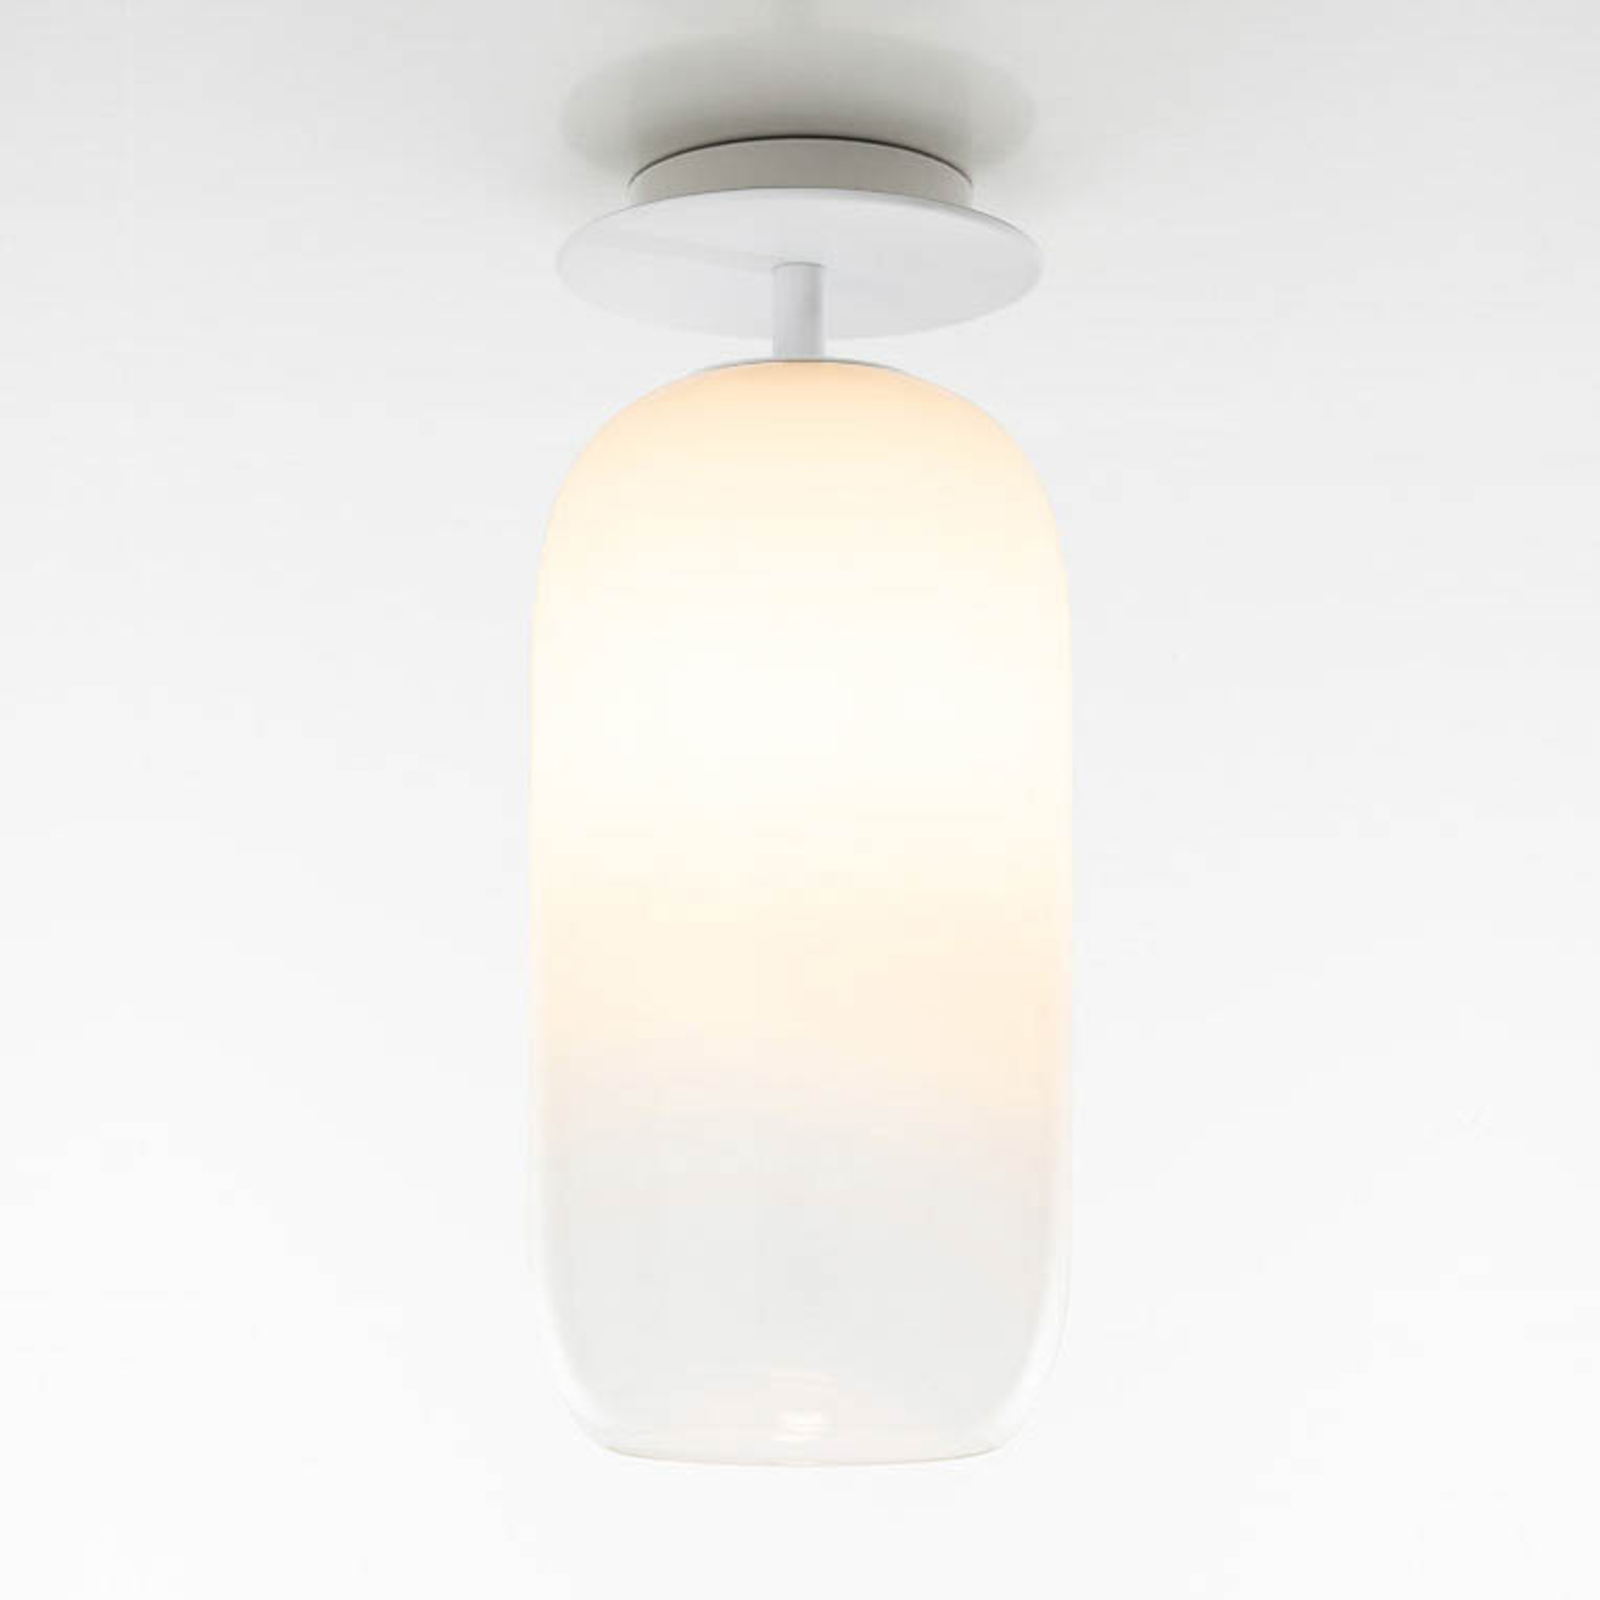 Artemide Gople lampa sufitowa, biała/biała